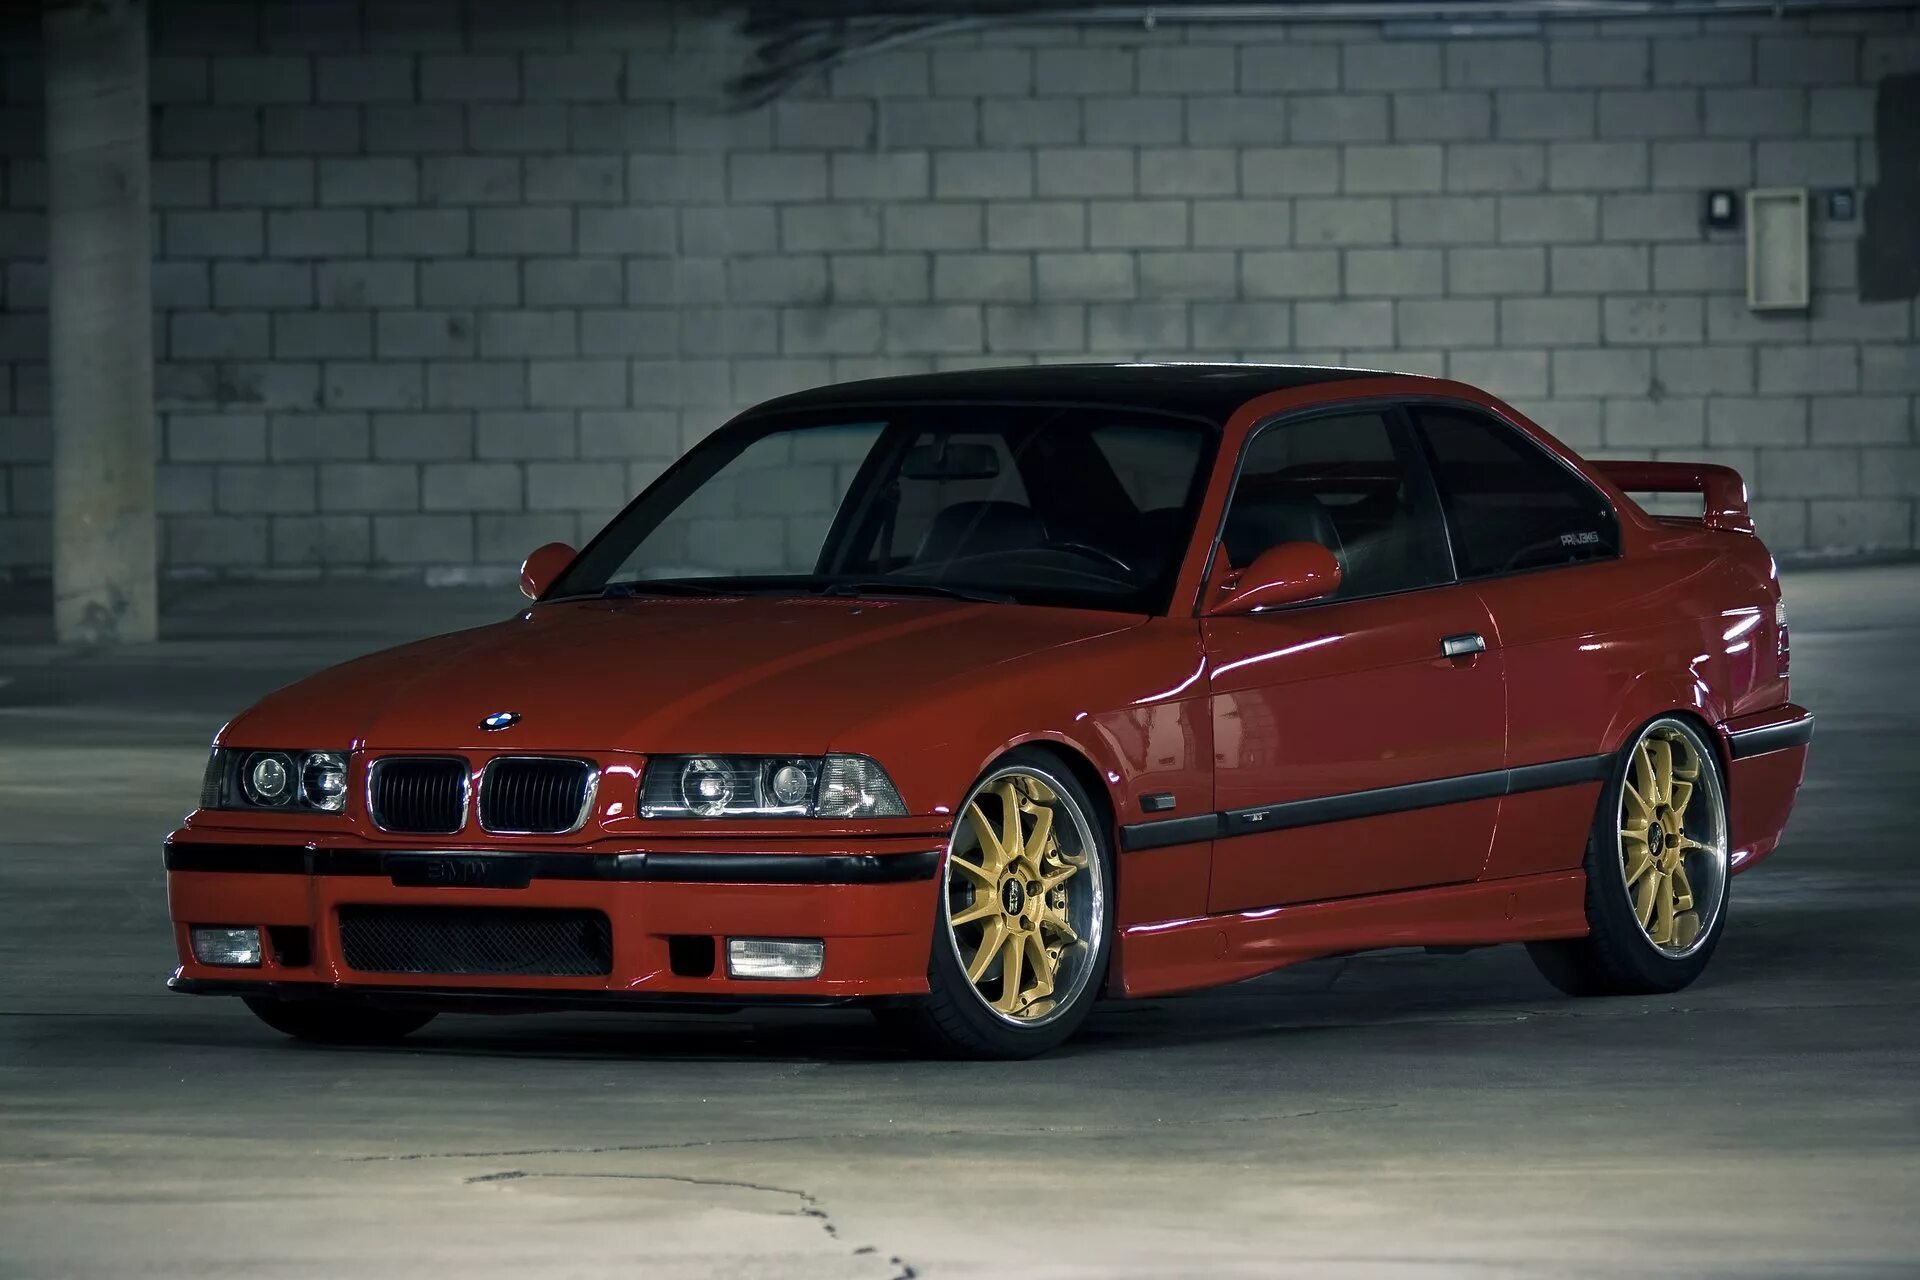 БМВ m3 e36. BMW 3 e36. 1997 BMW m3 e36. BMW m3 e36 Coupe. Бмв е36 драйв